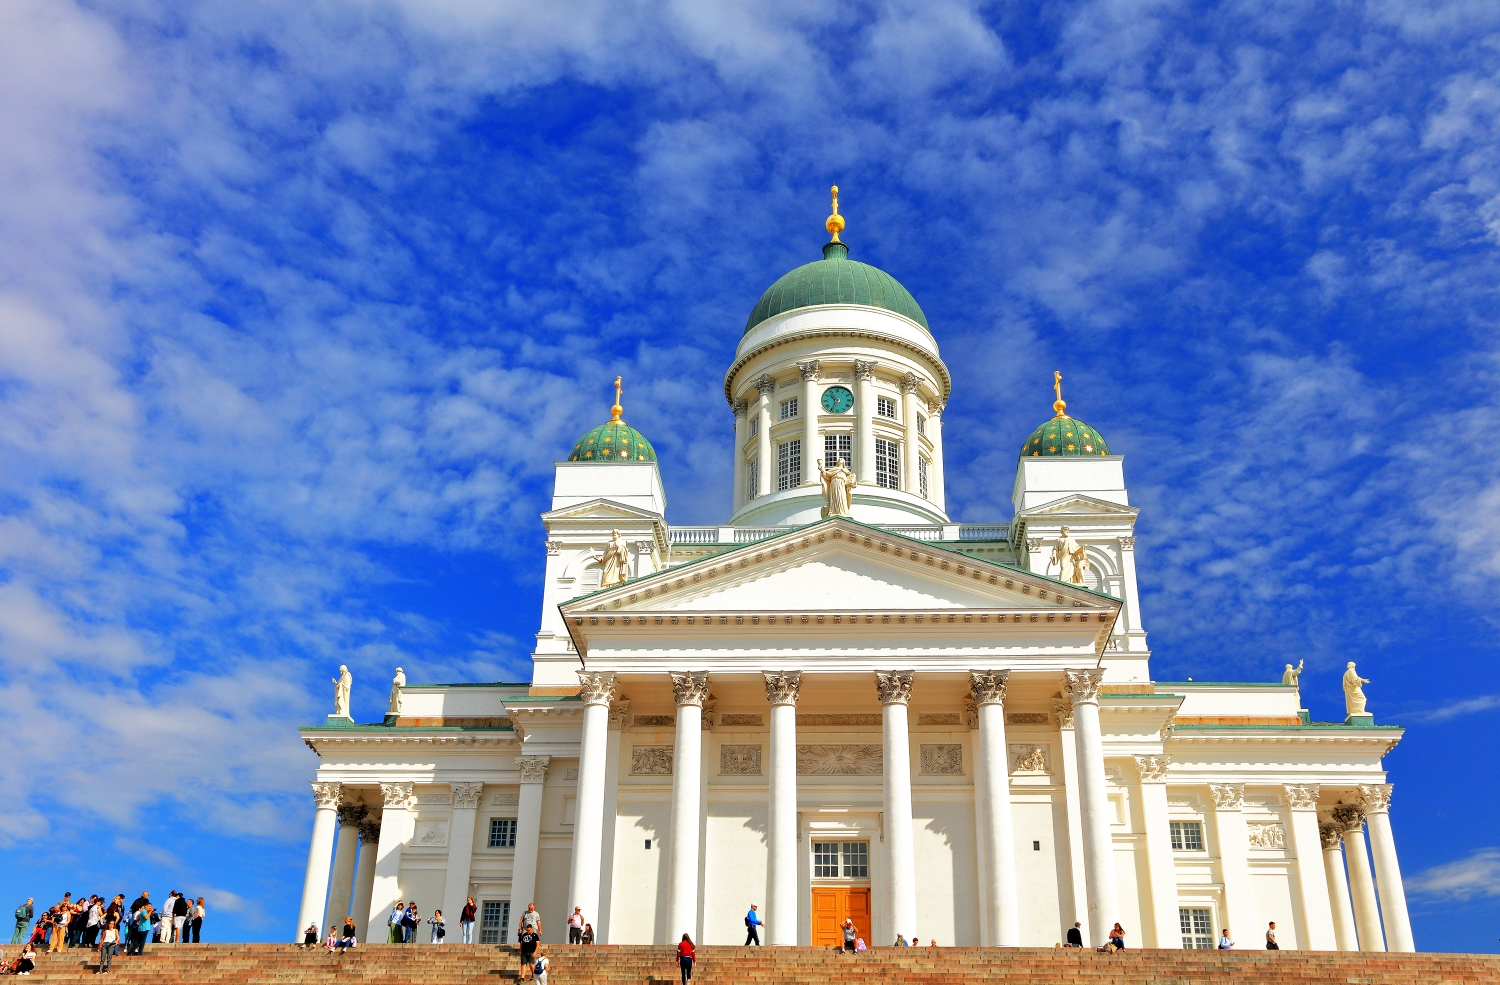 芬兰皇宫图片